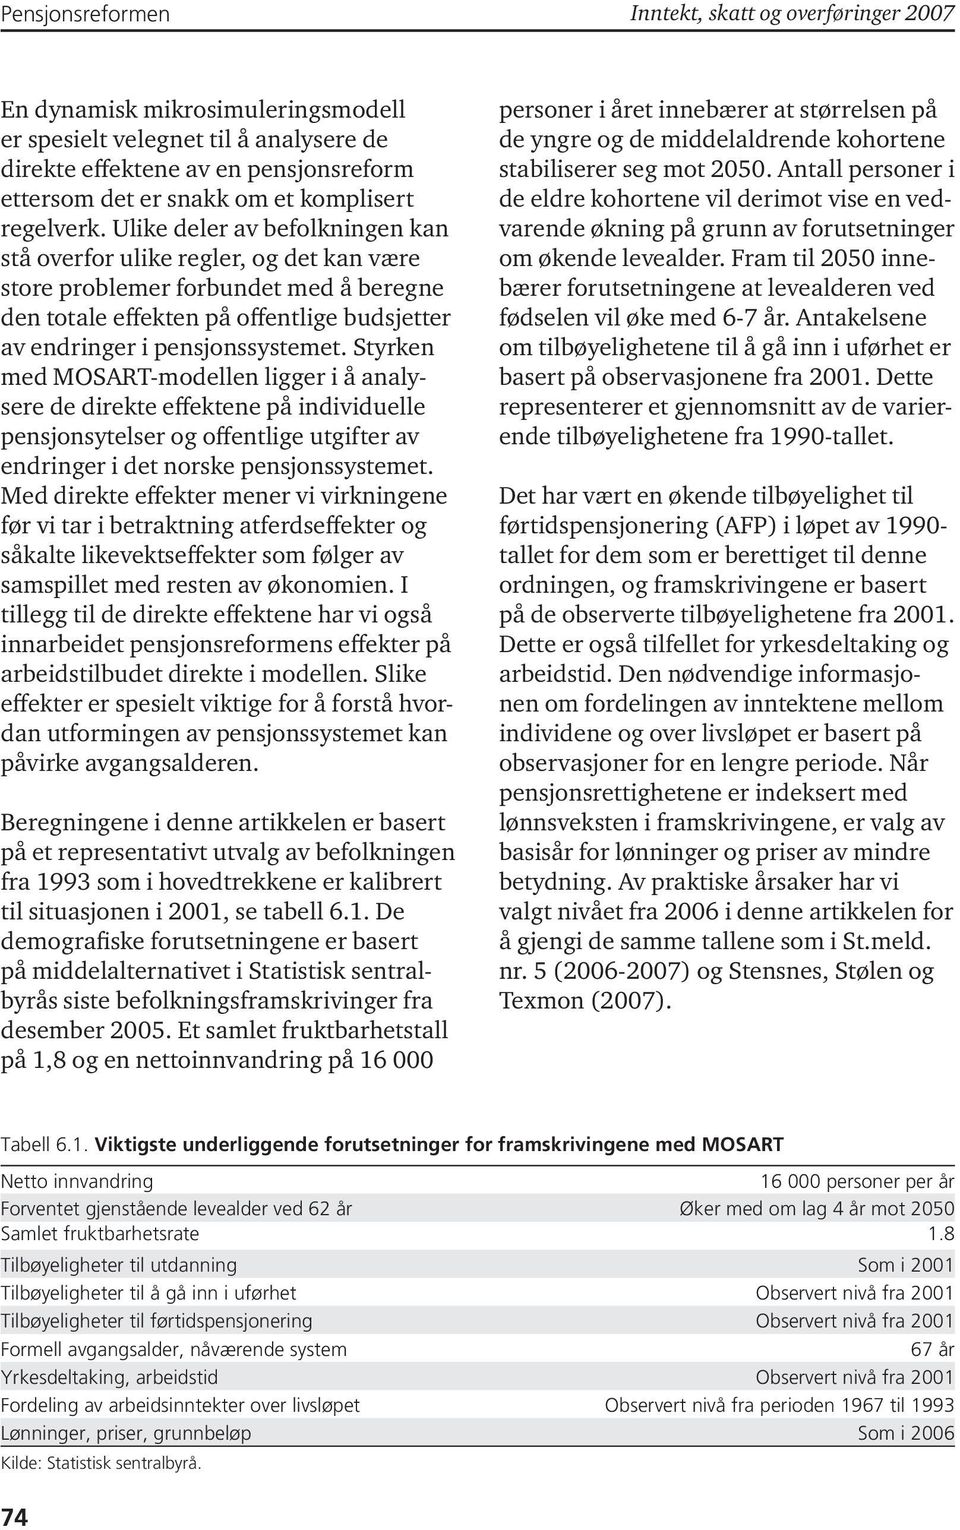 Styrken med MOSART-modellen ligger i å analysere de direkte effektene på individuelle pensjonsytelser og offentlige utgifter av endringer i det norske pensjonssystemet.